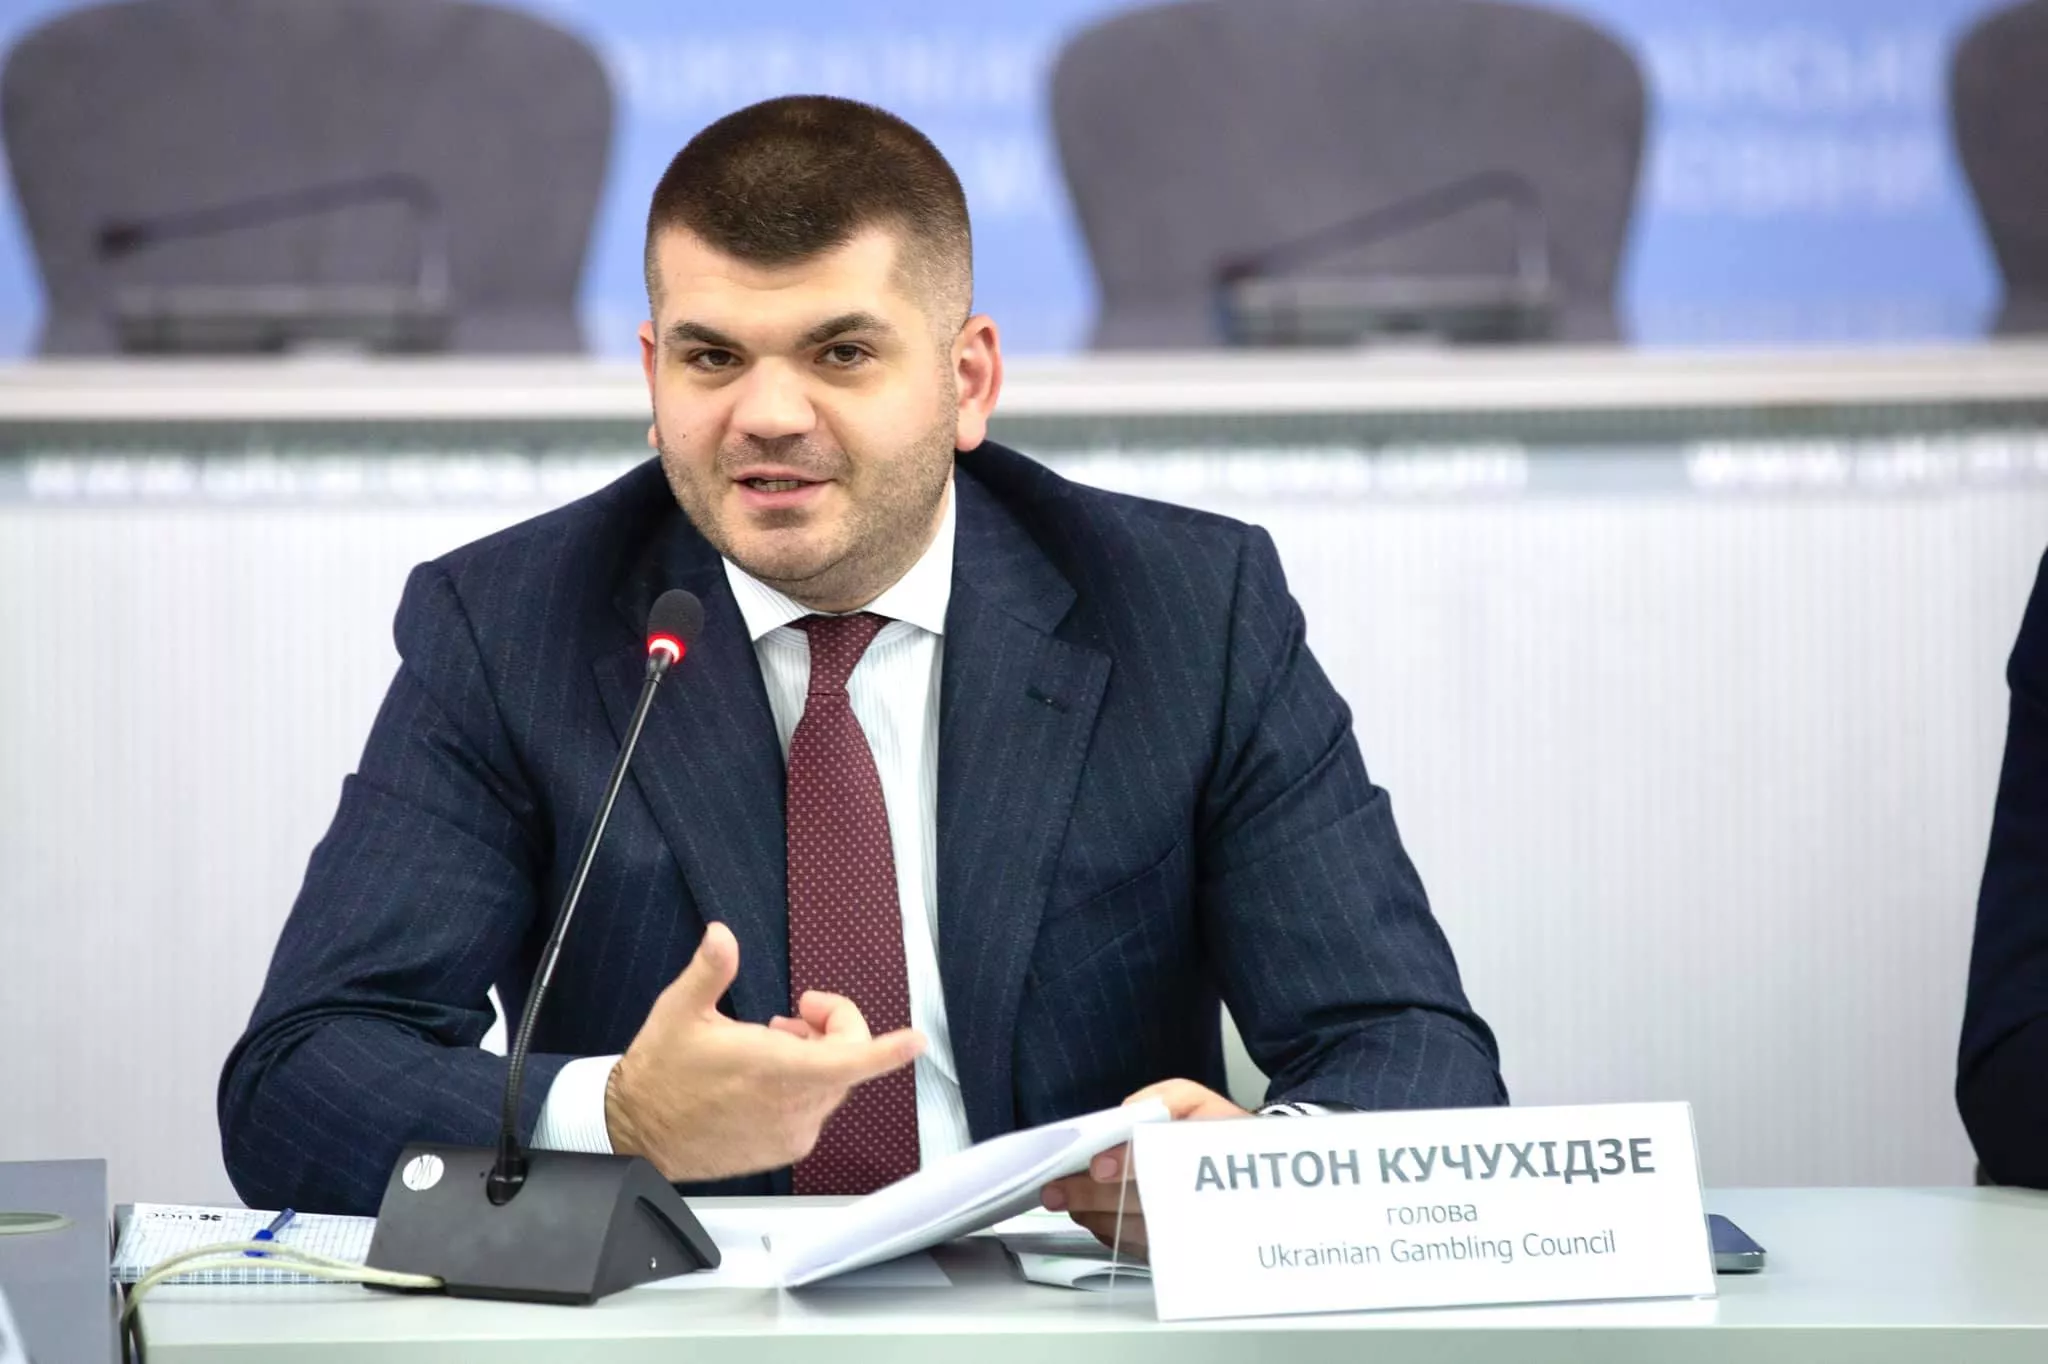 Антон Кучухидзе: "Угроза все еще существует и конфликт продолжается"